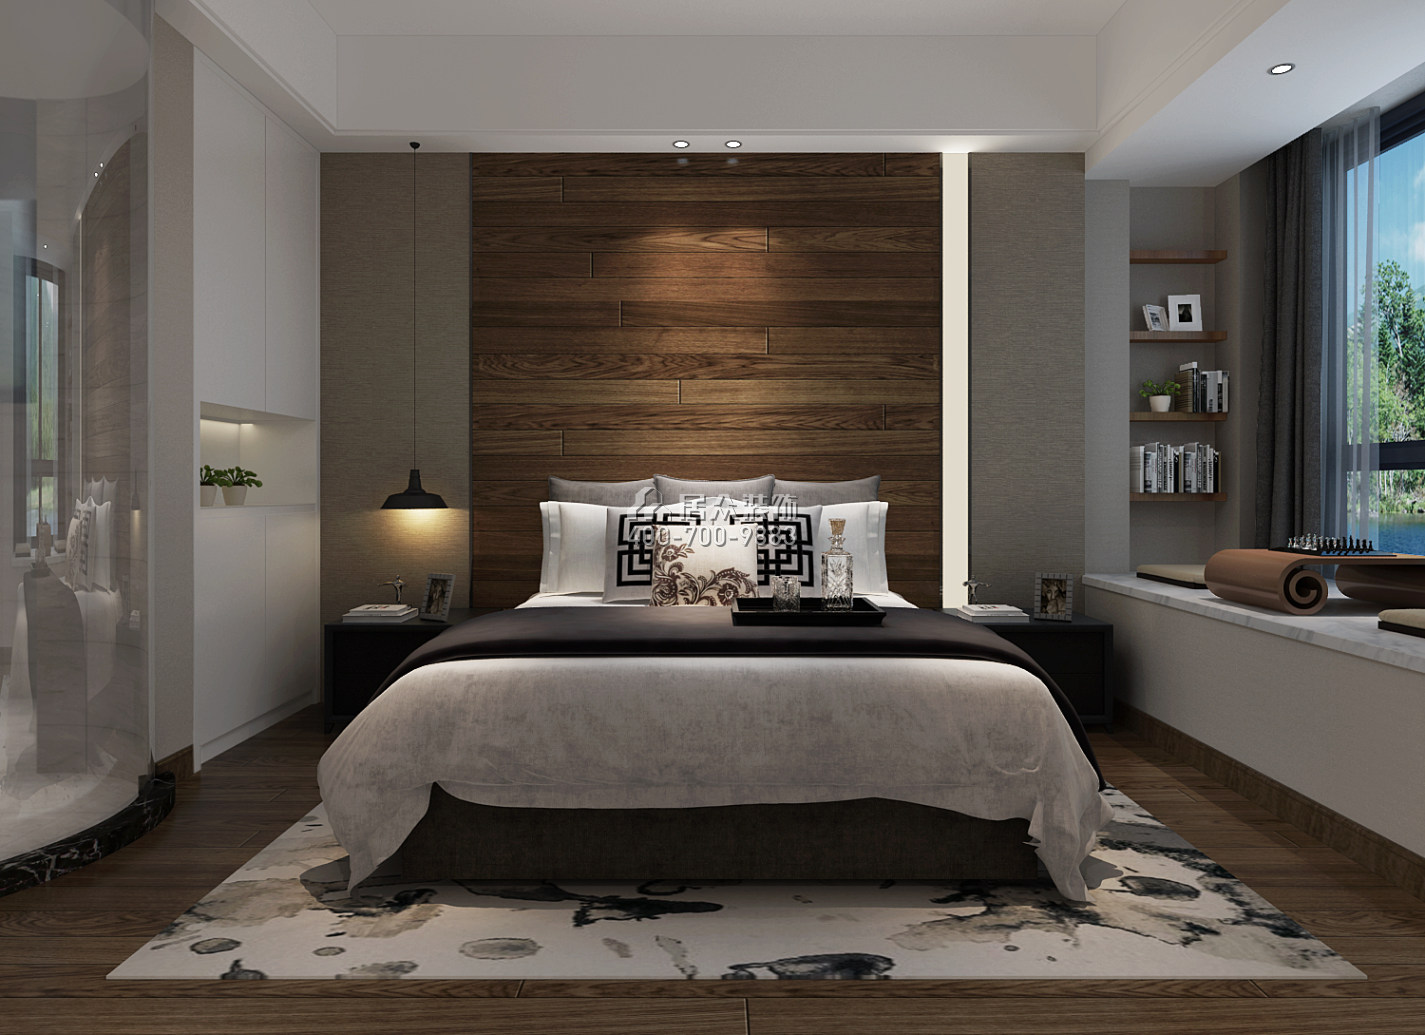 天利天鵝灣132平方米現代簡約風格平層戶型臥室裝修效果圖